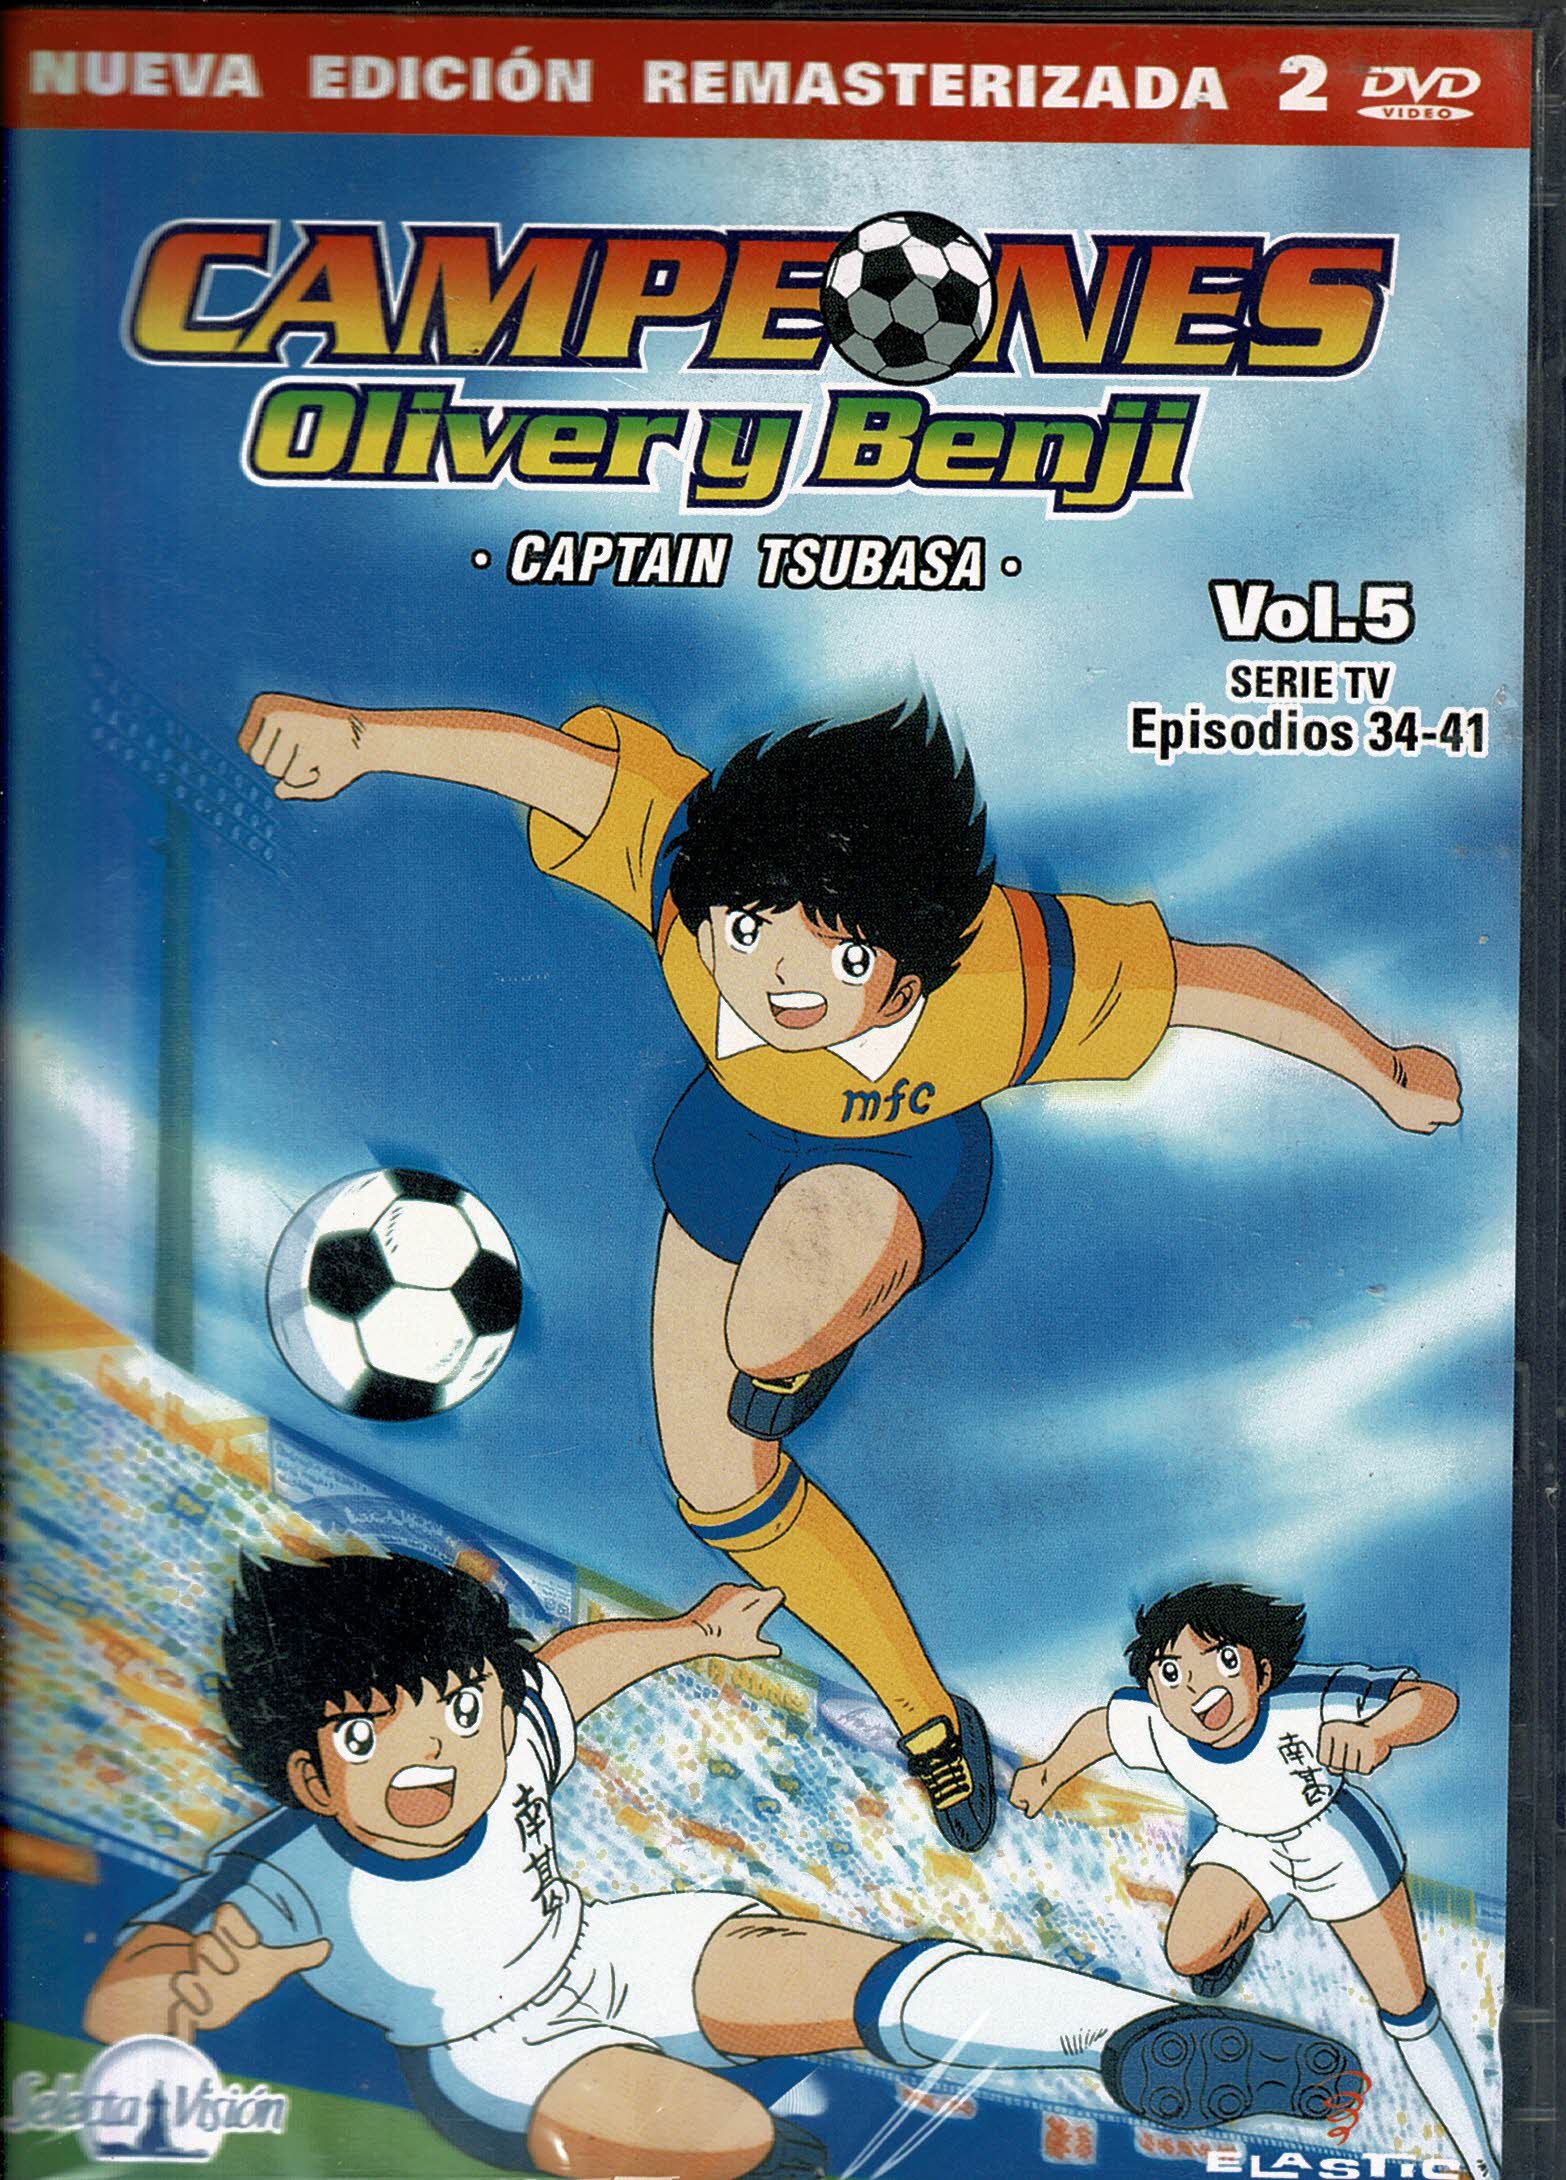 Campeones Oliver y Benji *captain tsubasa* Vol 5 Episodios 34-41